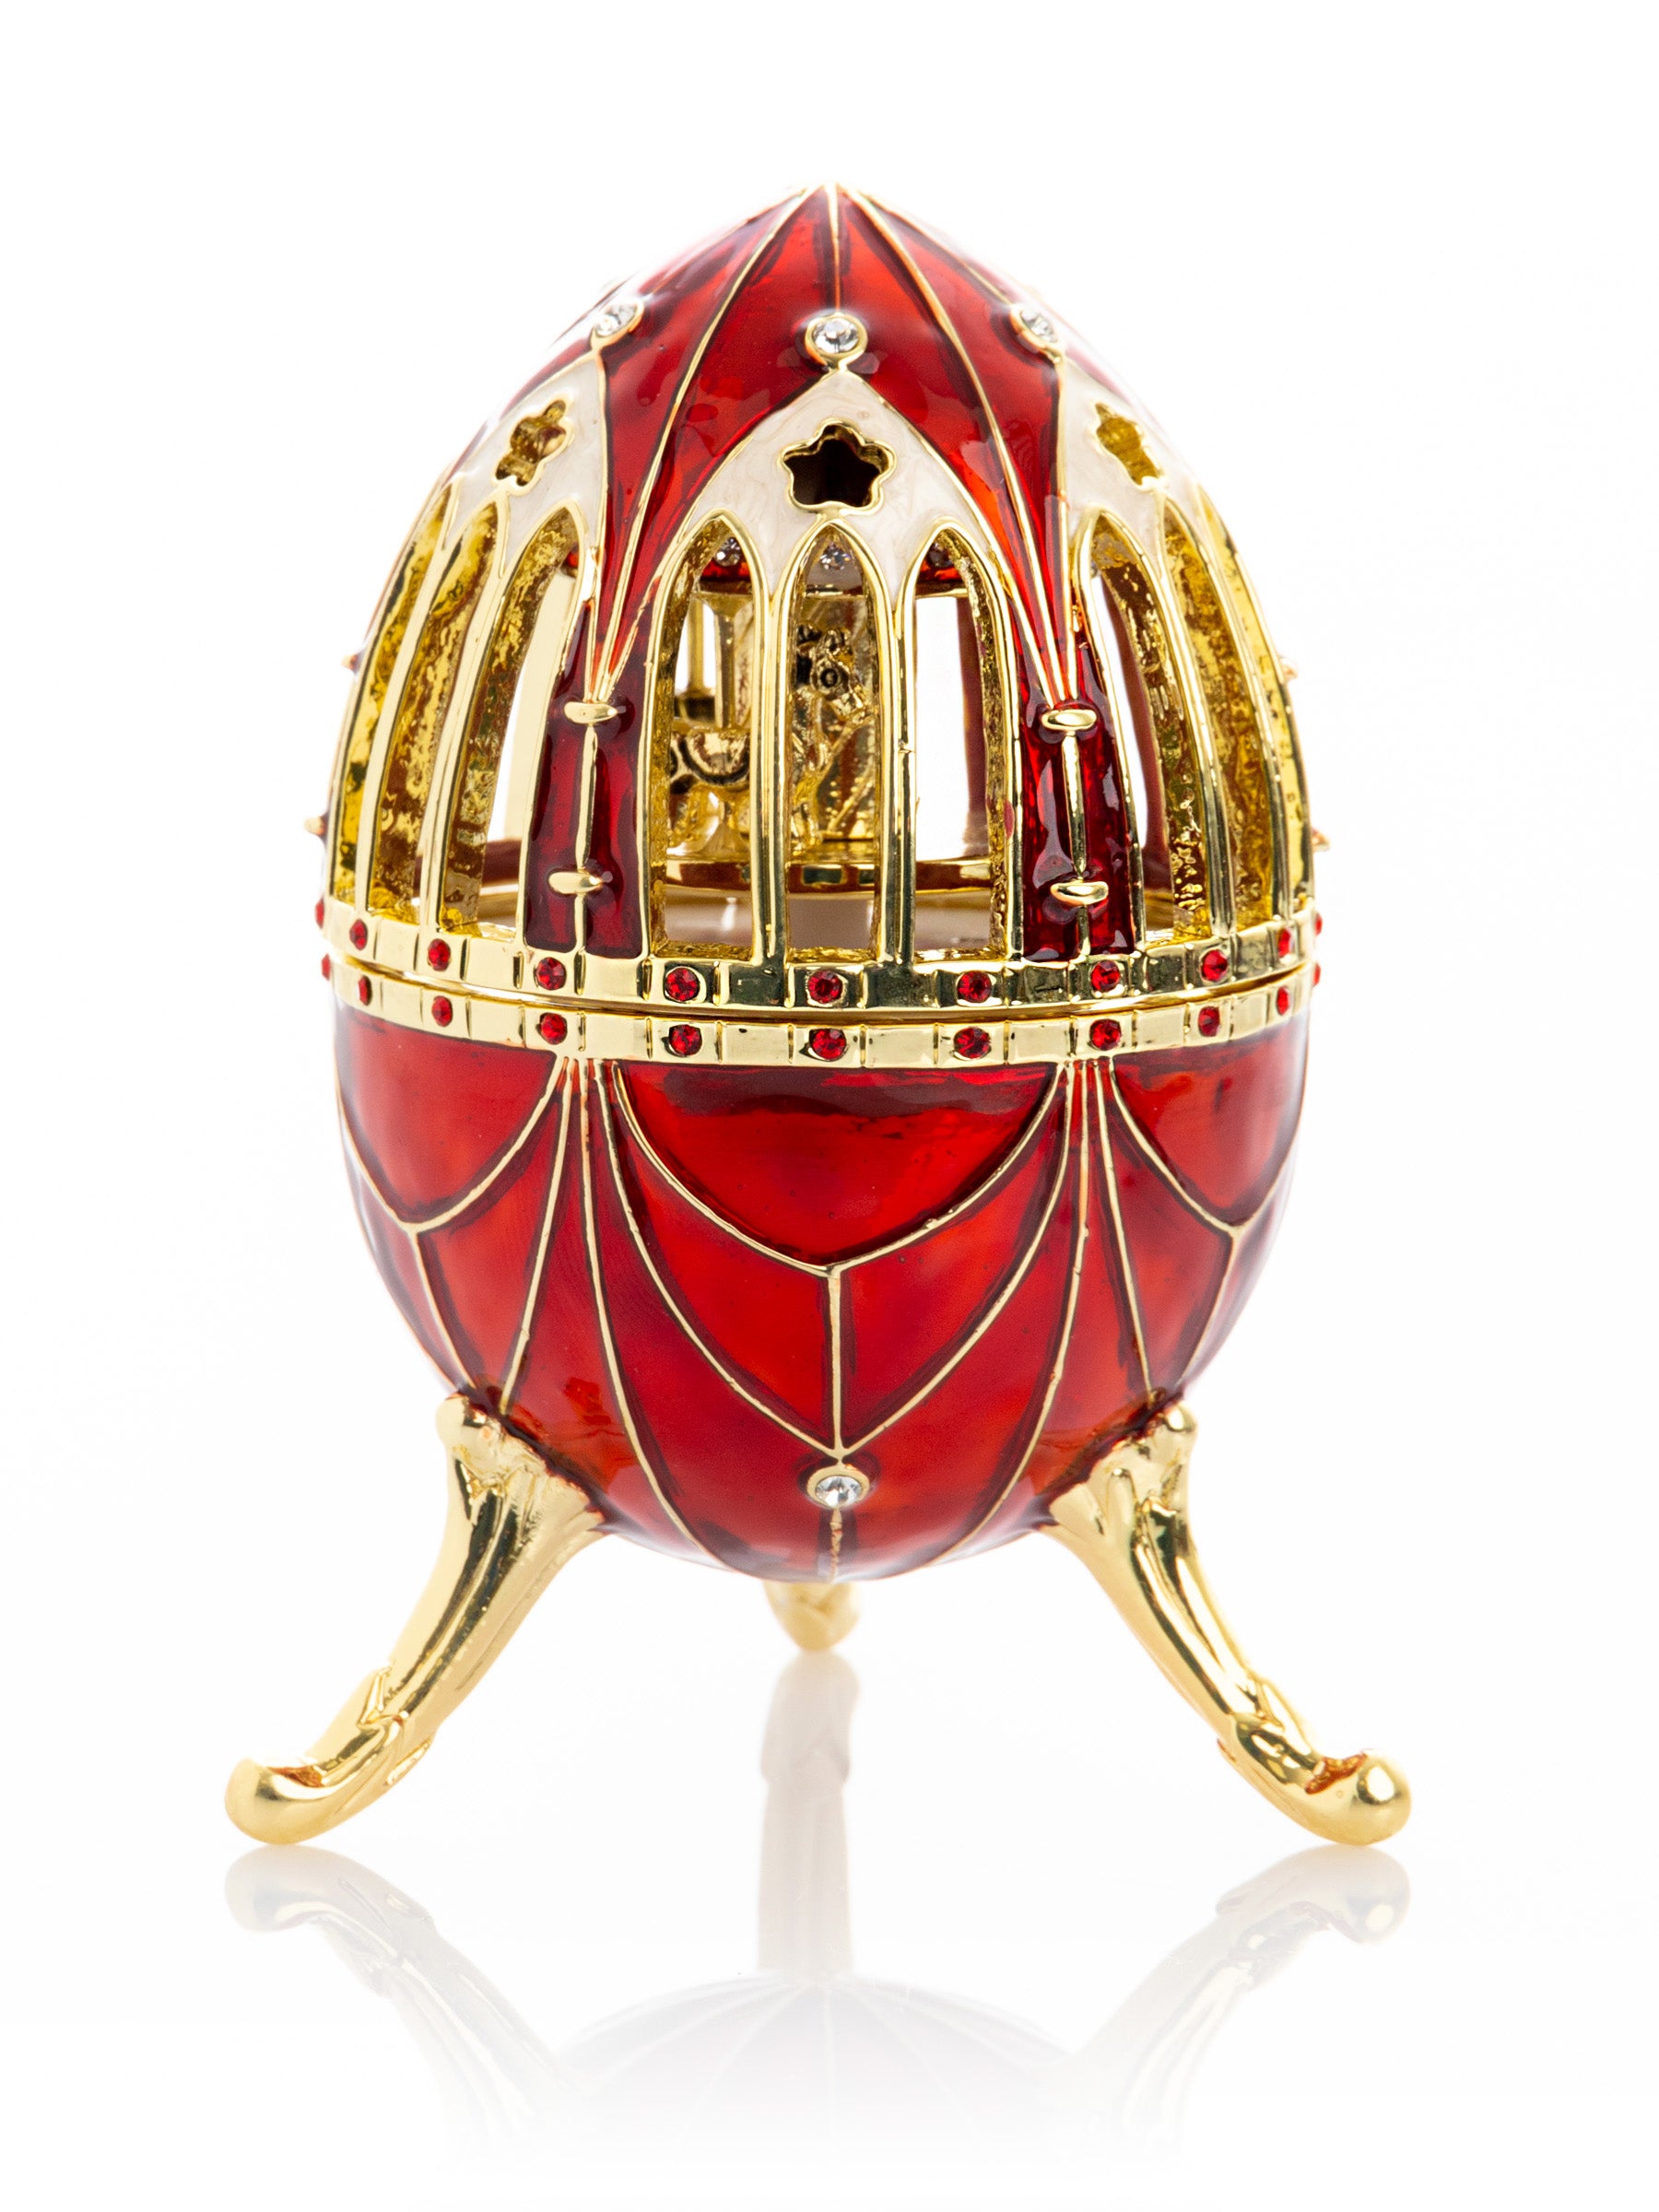 Красное яйцо в стиле Фаберже с музыкальной каруселью внутри